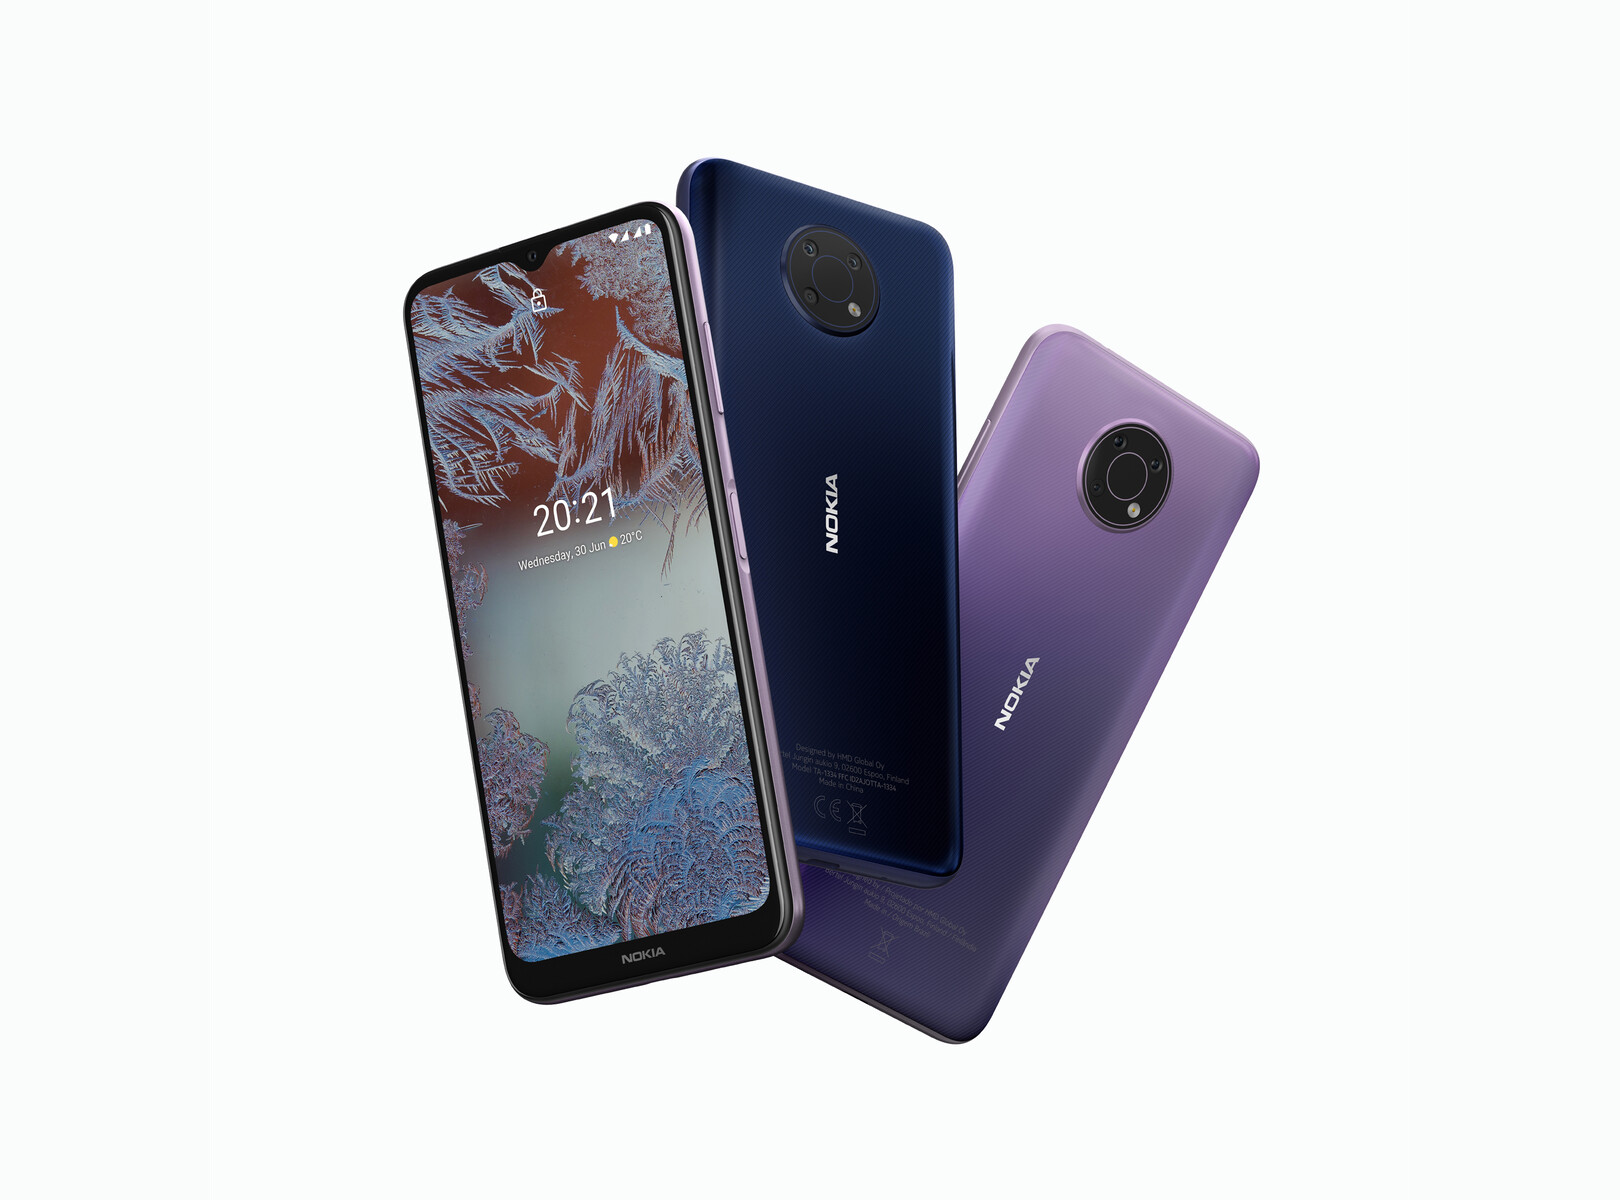 Nokia G Series là một trong những dòng sản phẩm điện thoại tốt nhất hiện nay. Đánh giá Nokia G Series sẽ giúp bạn hiểu rõ hơn về thiết kế, tính năng và đặc điểm của dòng sản phẩm này. Hãy cùng khám phá và tìm hiểu thêm về dòng điện thoại này để bạn có thể lựa chọn cho mình một sản phẩm tốt nhất.